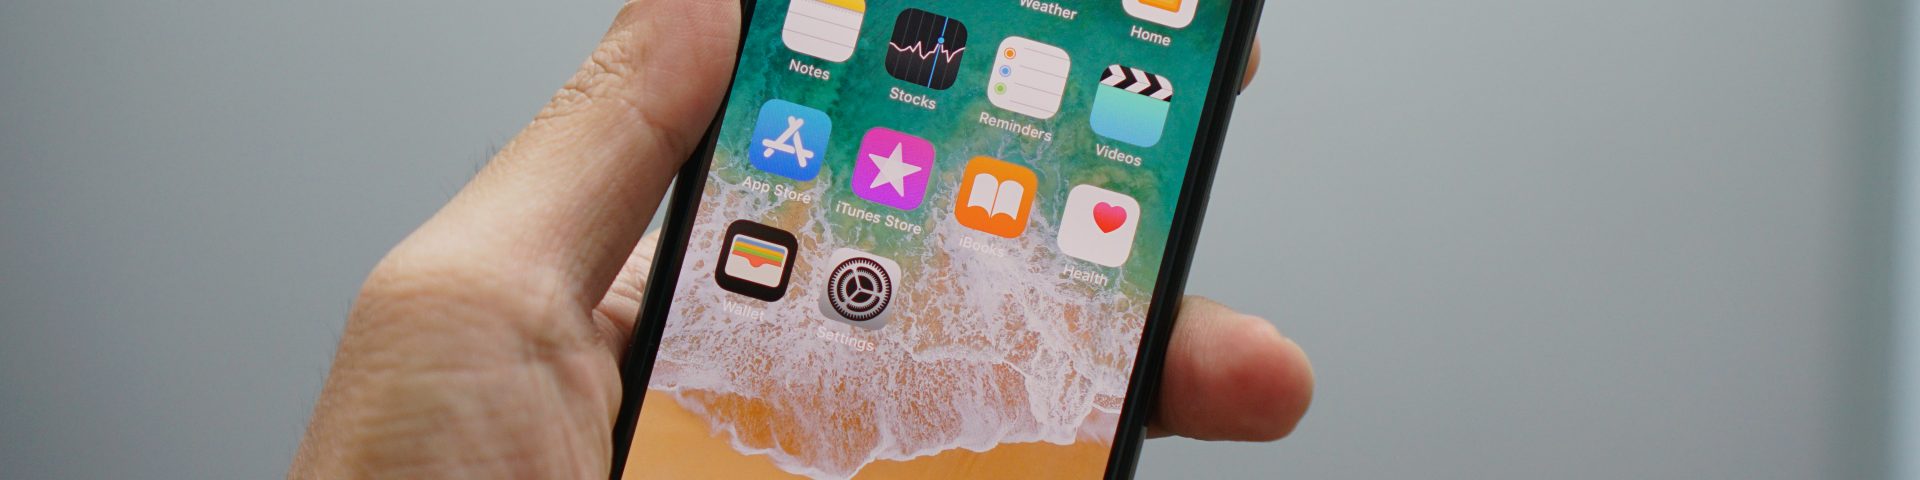 Naprawa telefonu Apple - wymiana wyświetlacza